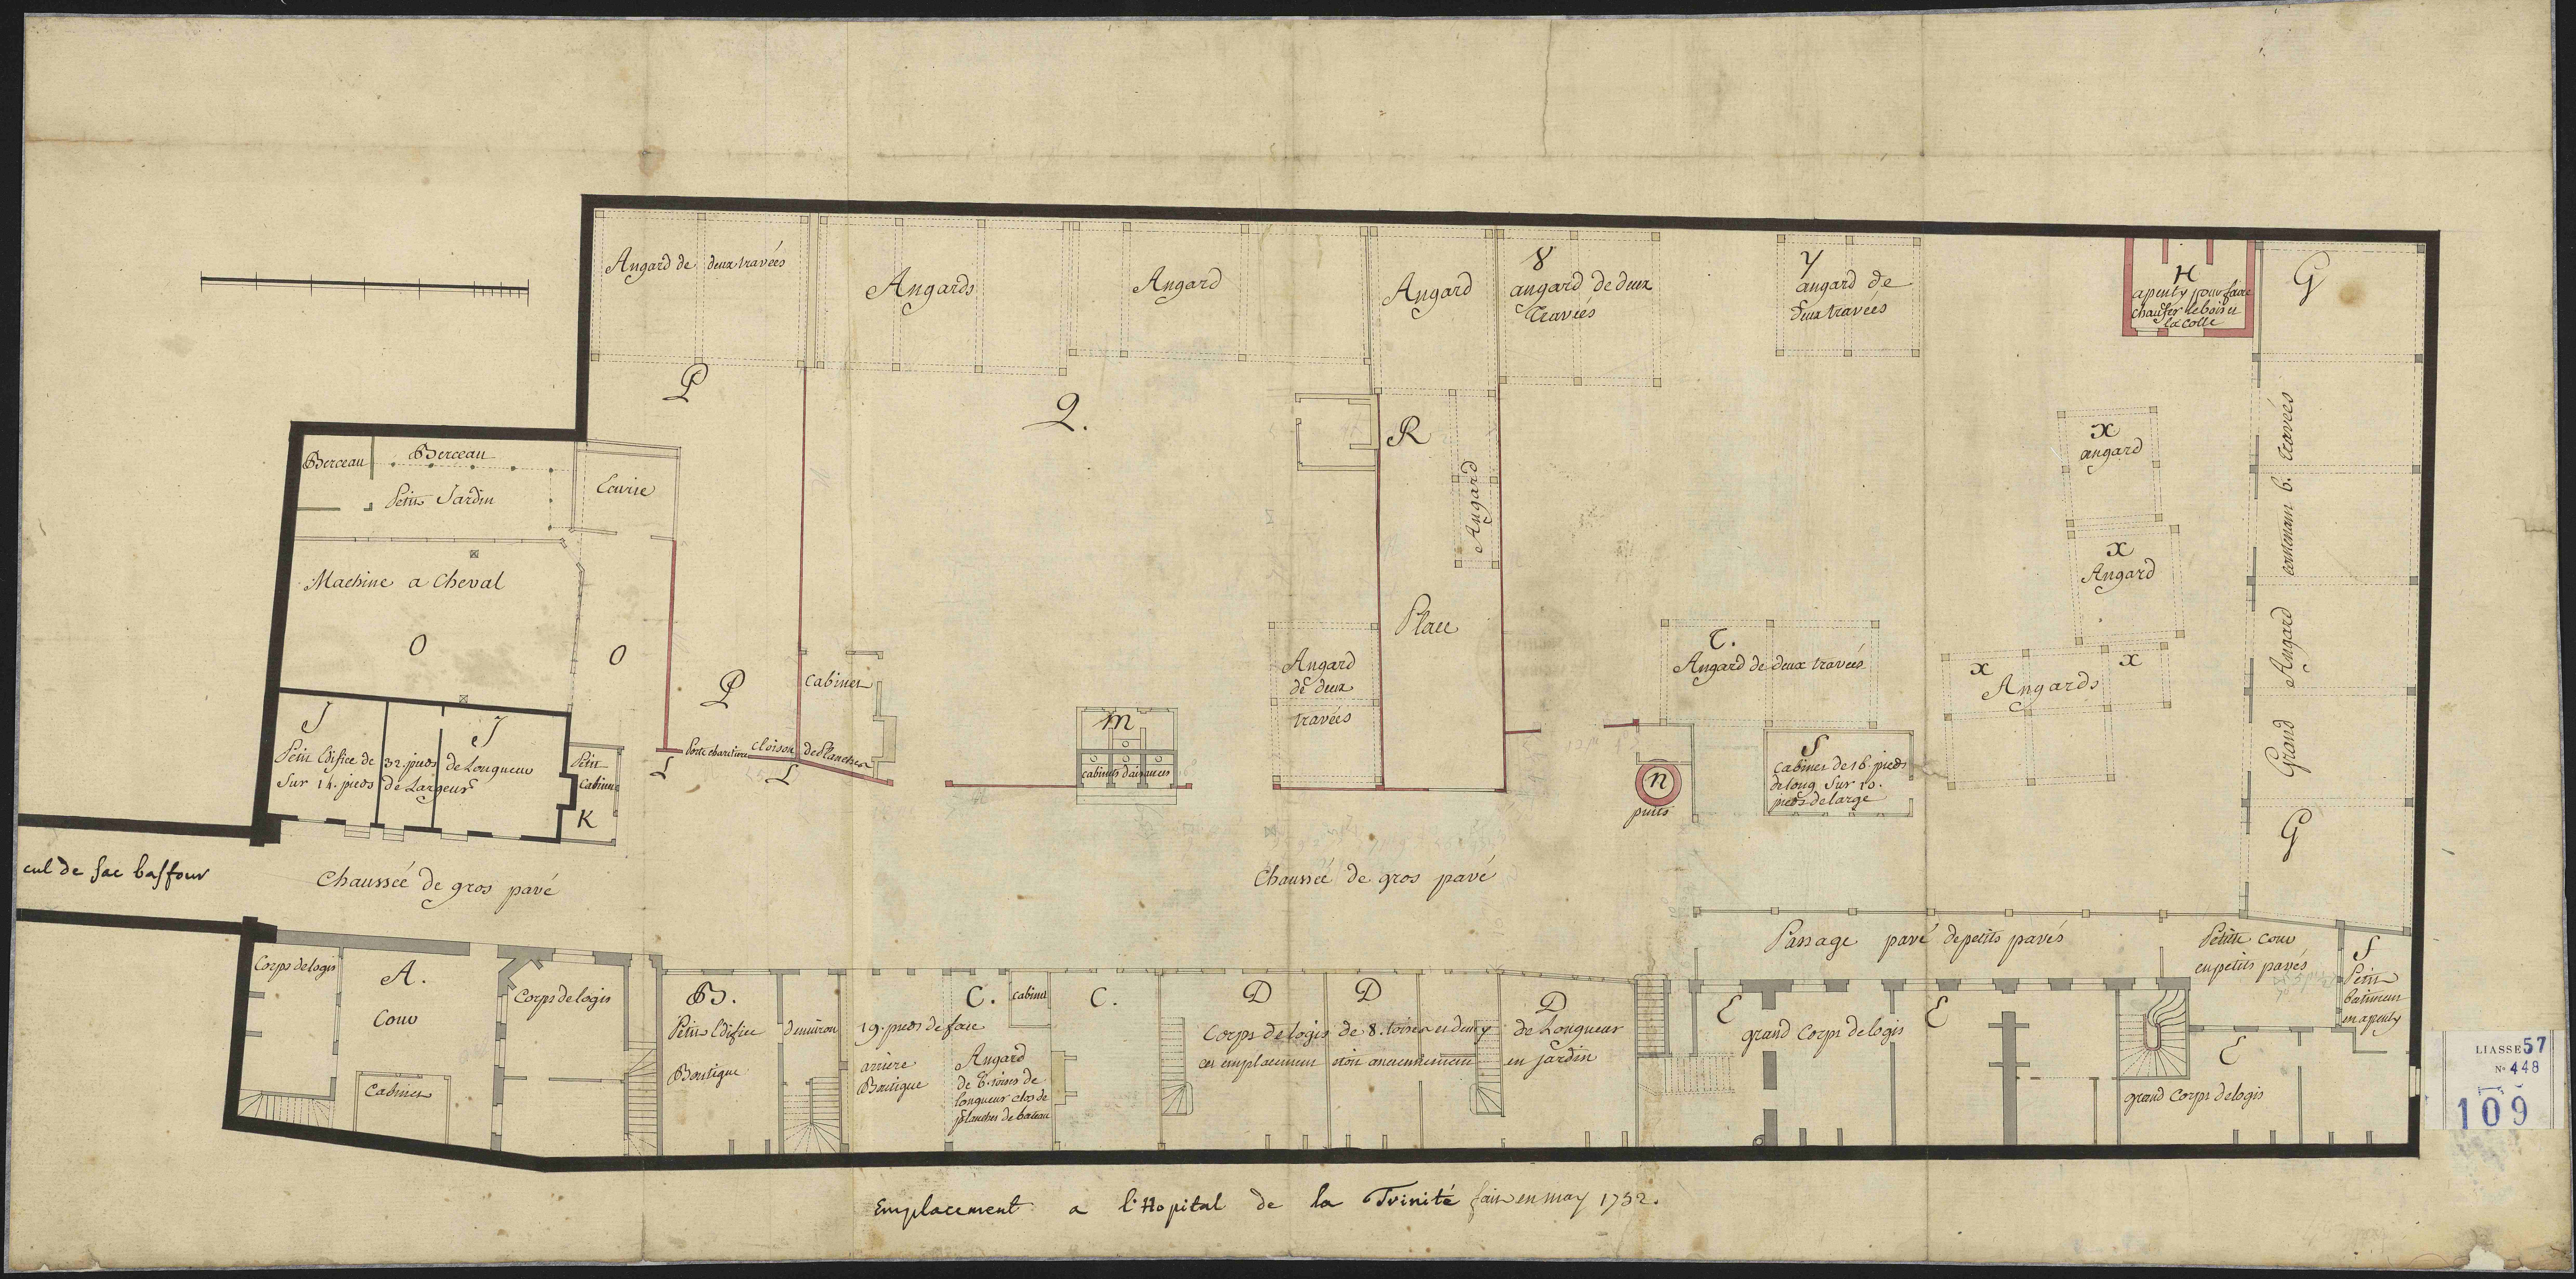 Plan du cimetière de l'Hôtel-Dieu à l'hôpital de la Trinité, mai 1752 (Archives AP-HP, CND/109).